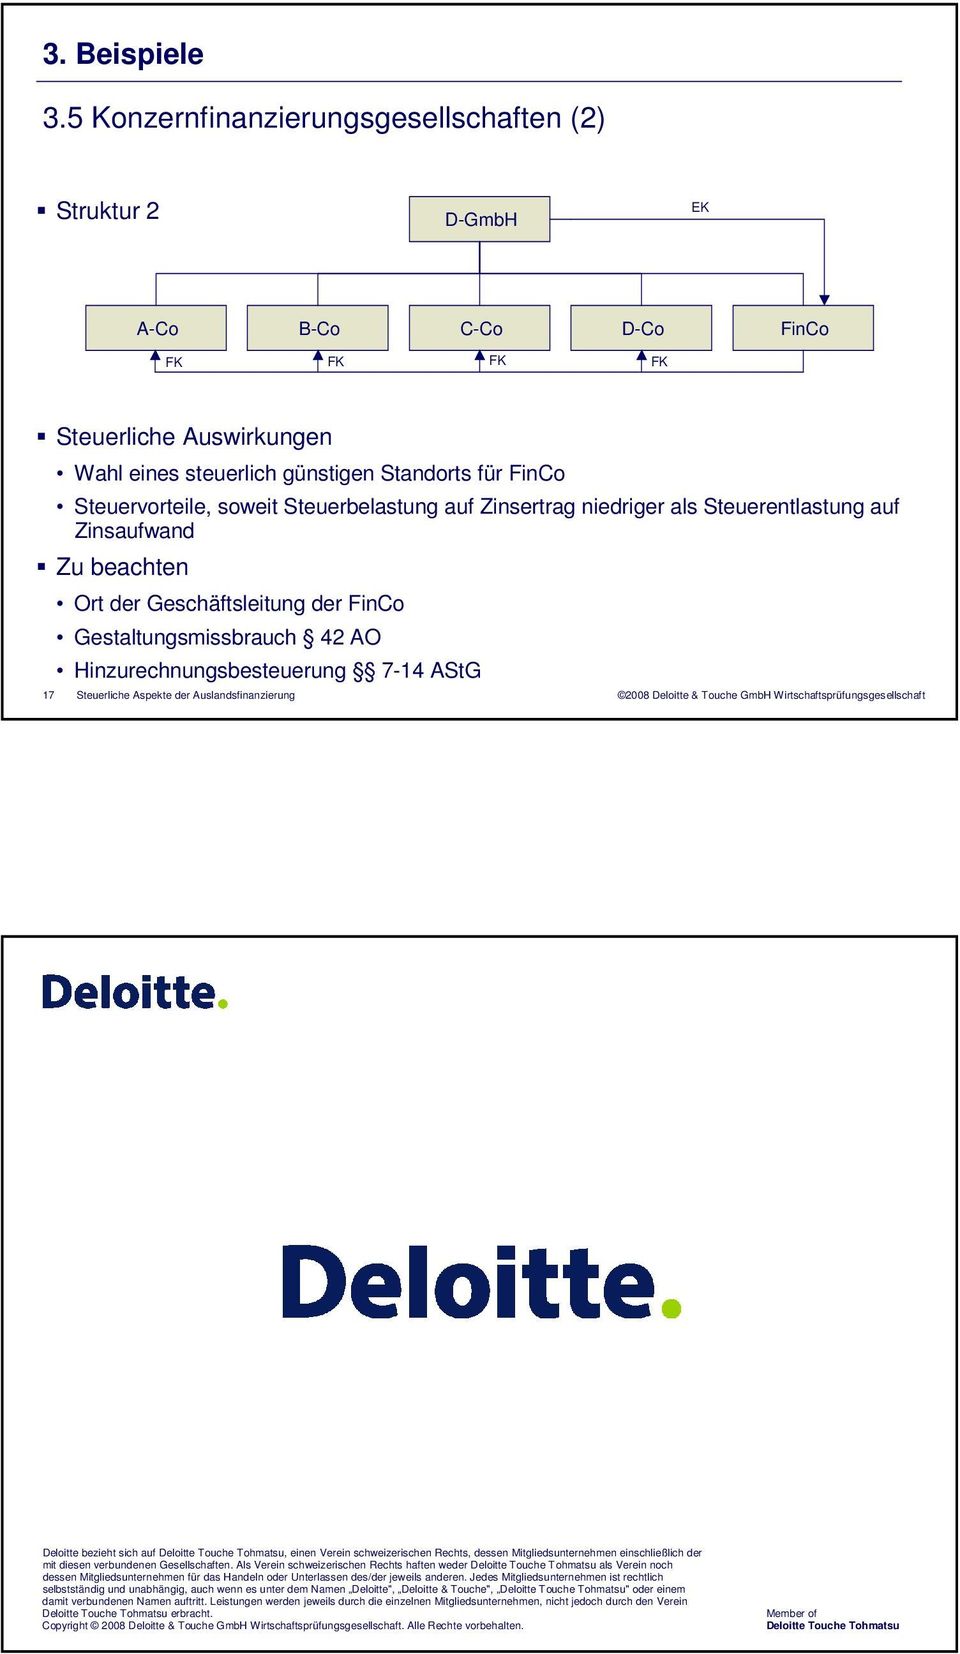 als Steuerentlastung auf Zinsaufwand Zu beachten Ort der Geschäftsleitung der FinCo Gestaltungsmissbrauch 42 AO Hinzurechnungsbesteuerung 7-14 AStG Deloitte bezieht sich auf Deloitte Touche Tohmatsu,